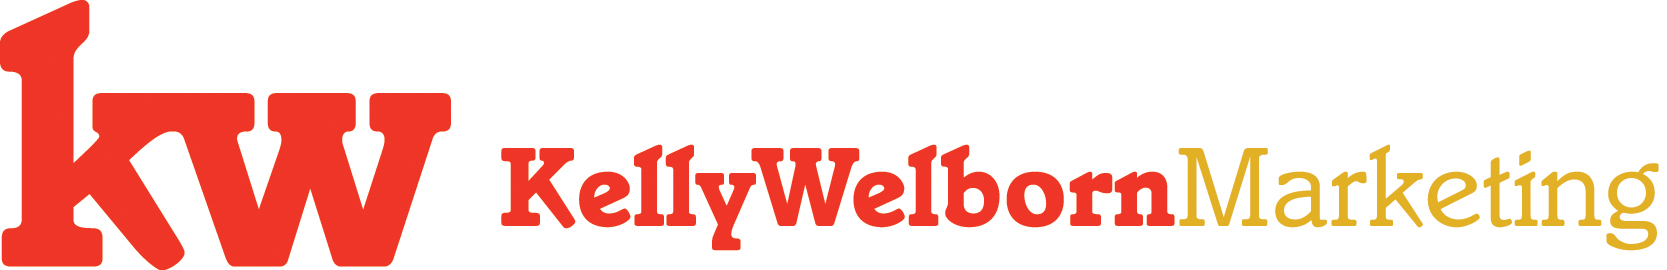 Kellyjwelborncom_logo